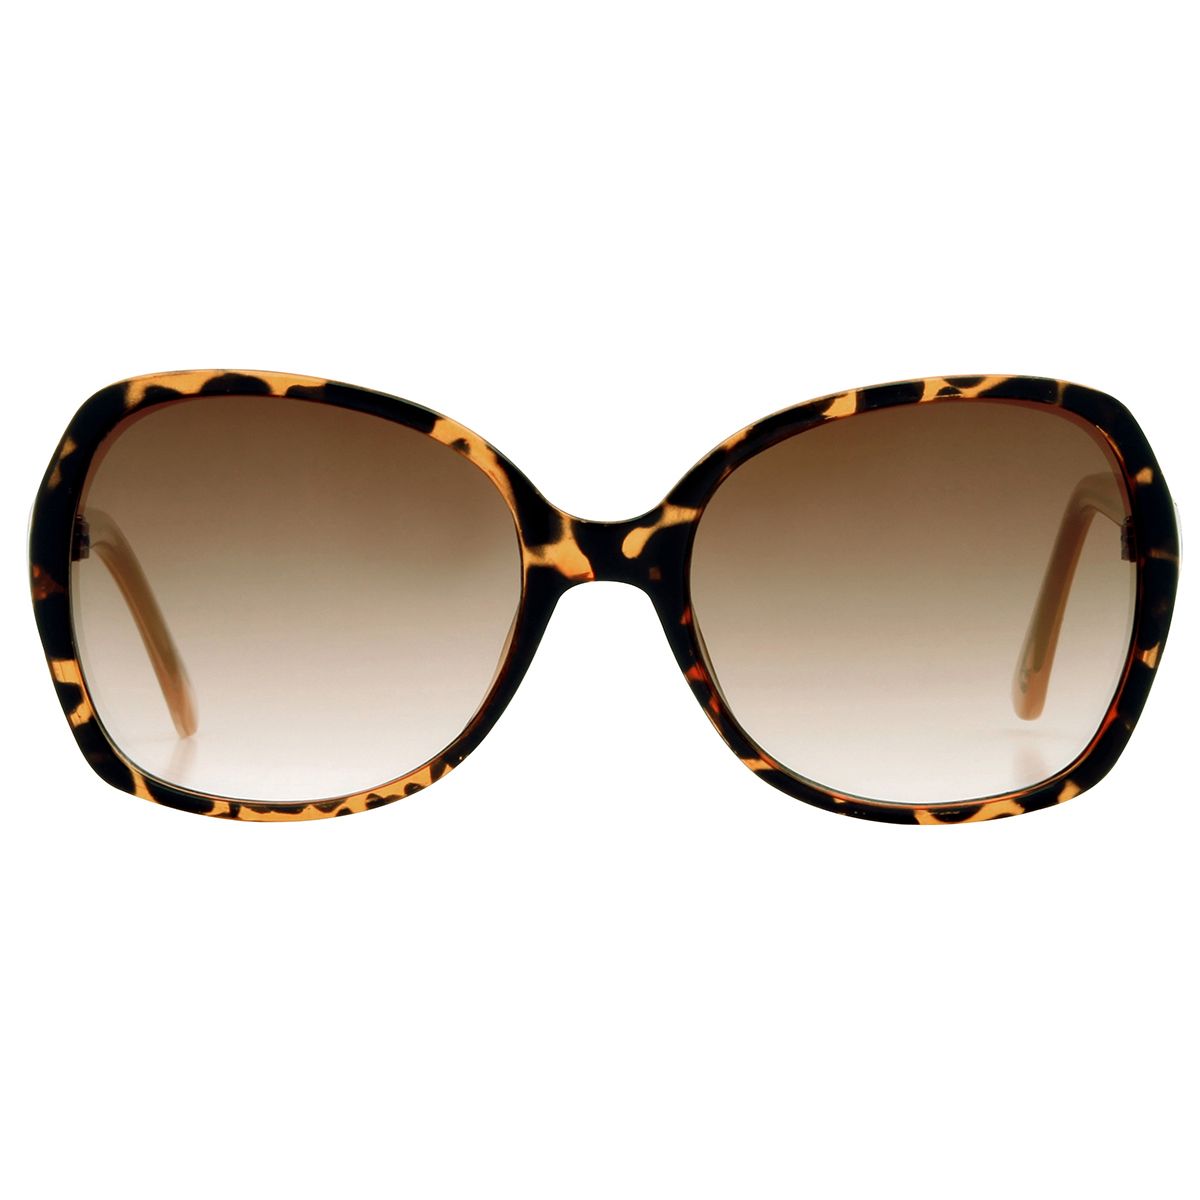 PF42 Foster Grant Sunglasses